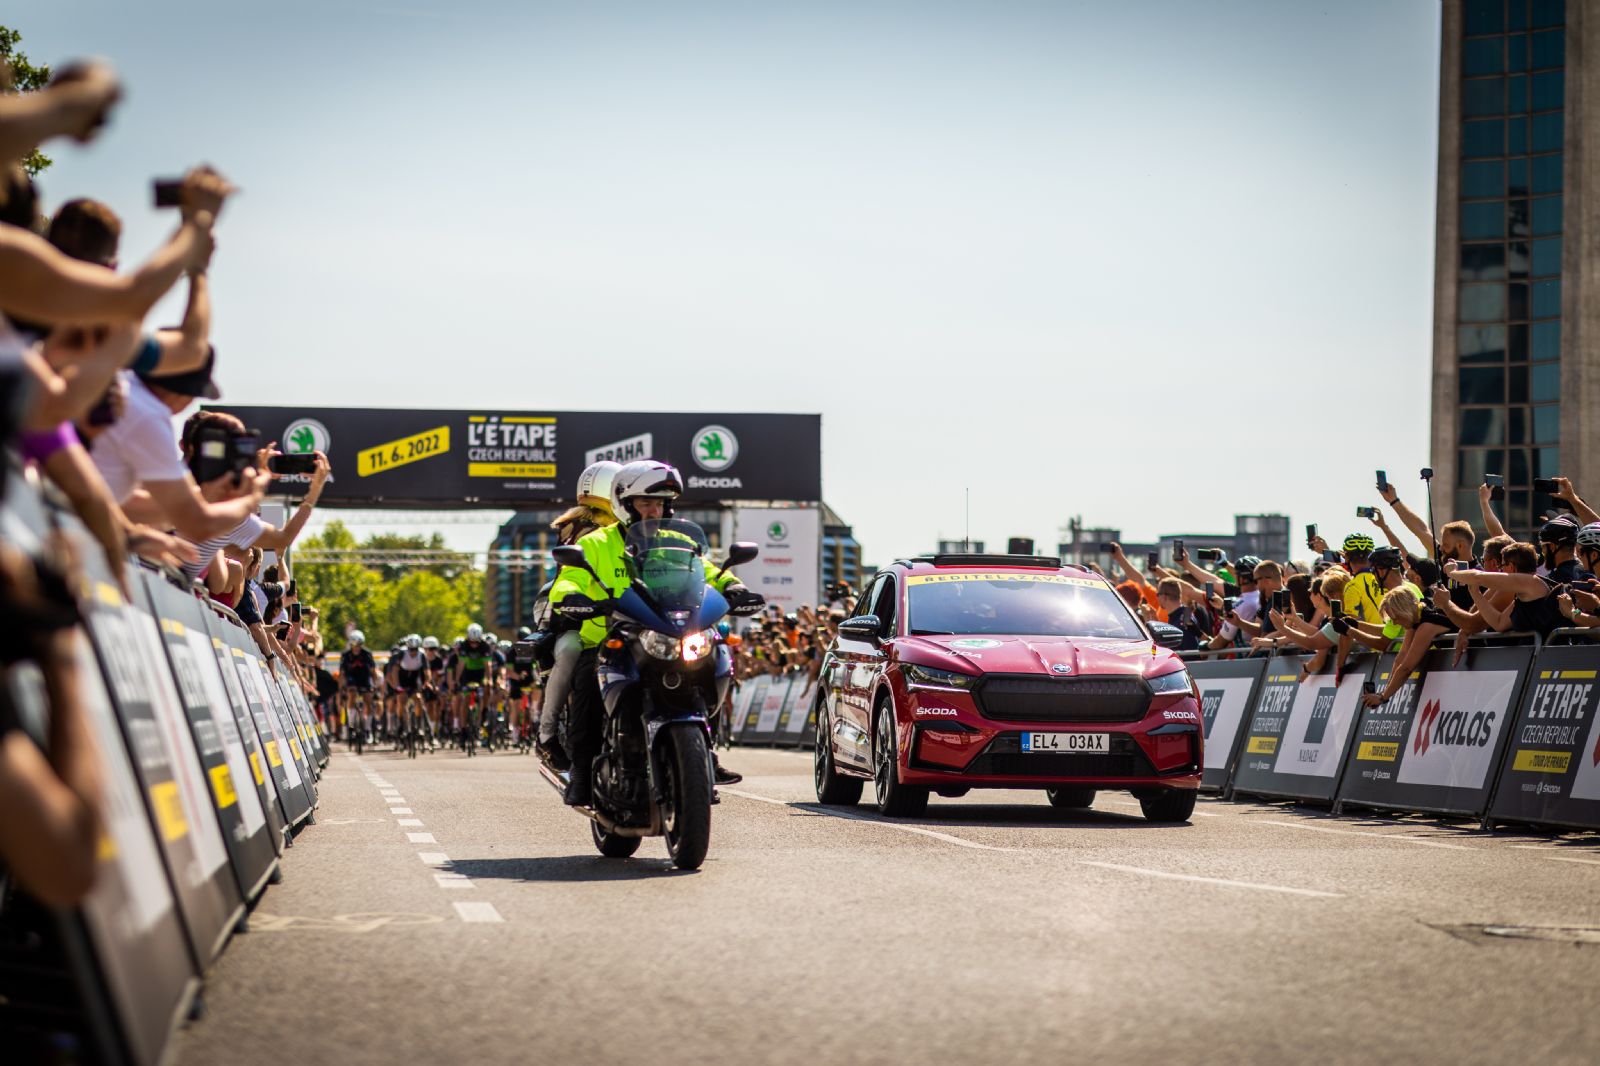 Škoda Auto opět generálním partnerem cyklistického závodu L'Etape Czech Republic by Tour de France. Objevte nové skladové vozy Škoda v Plzni